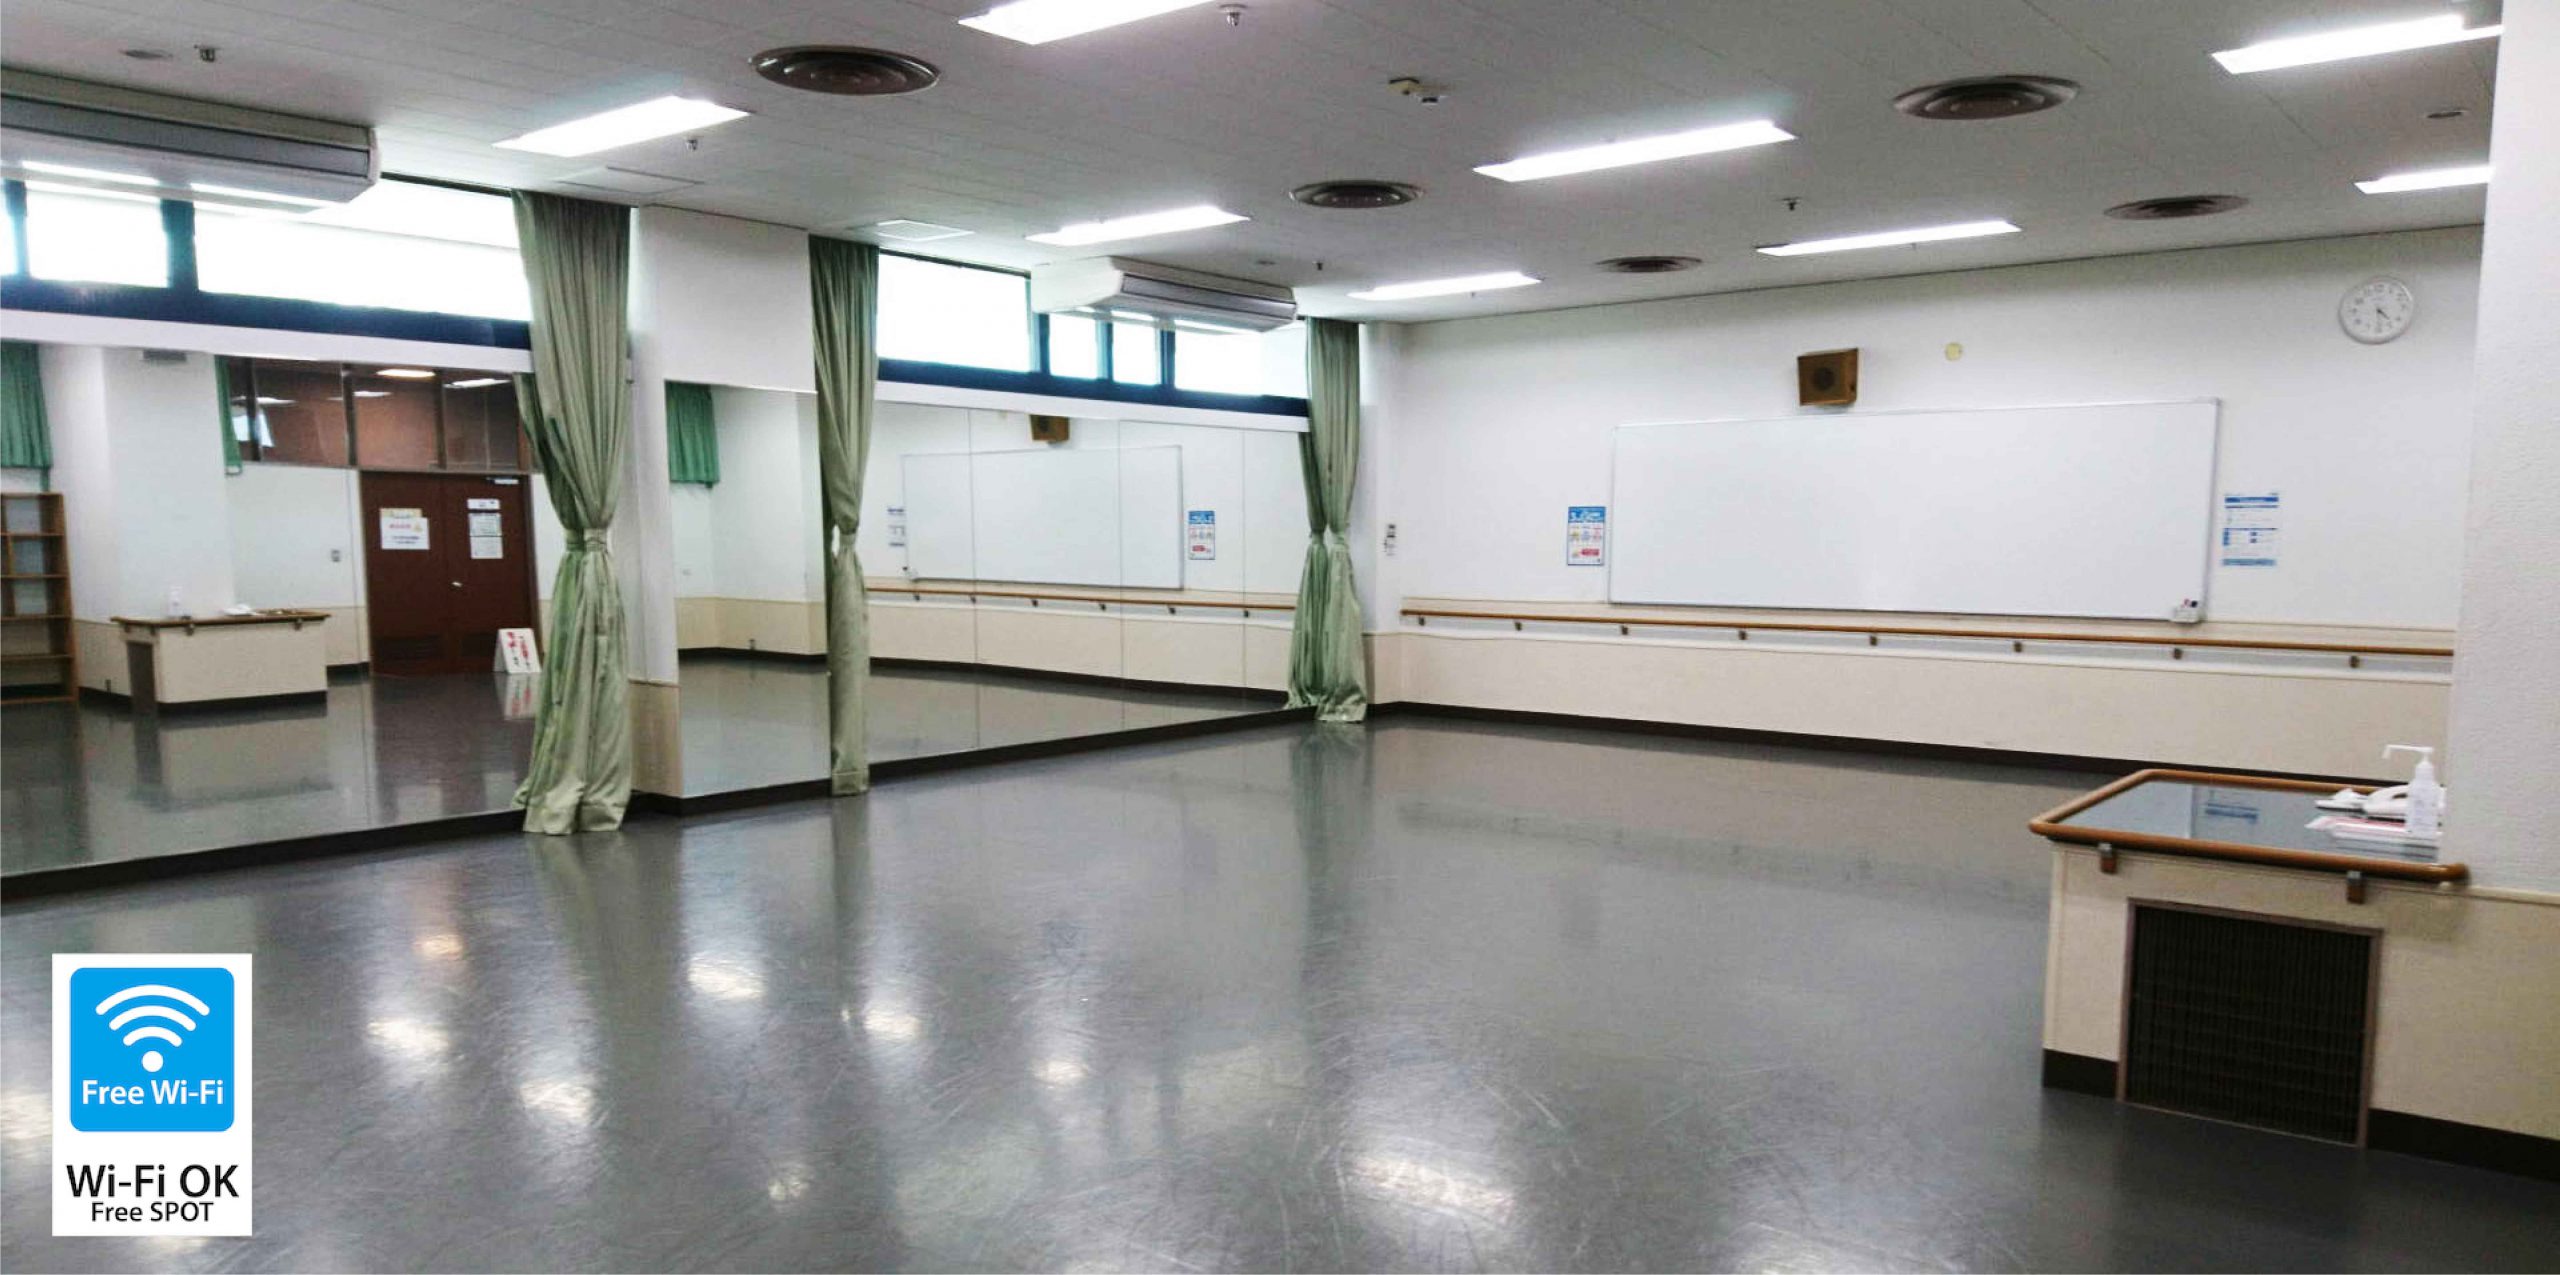 練習室 ご利用方法について 福岡市民会館